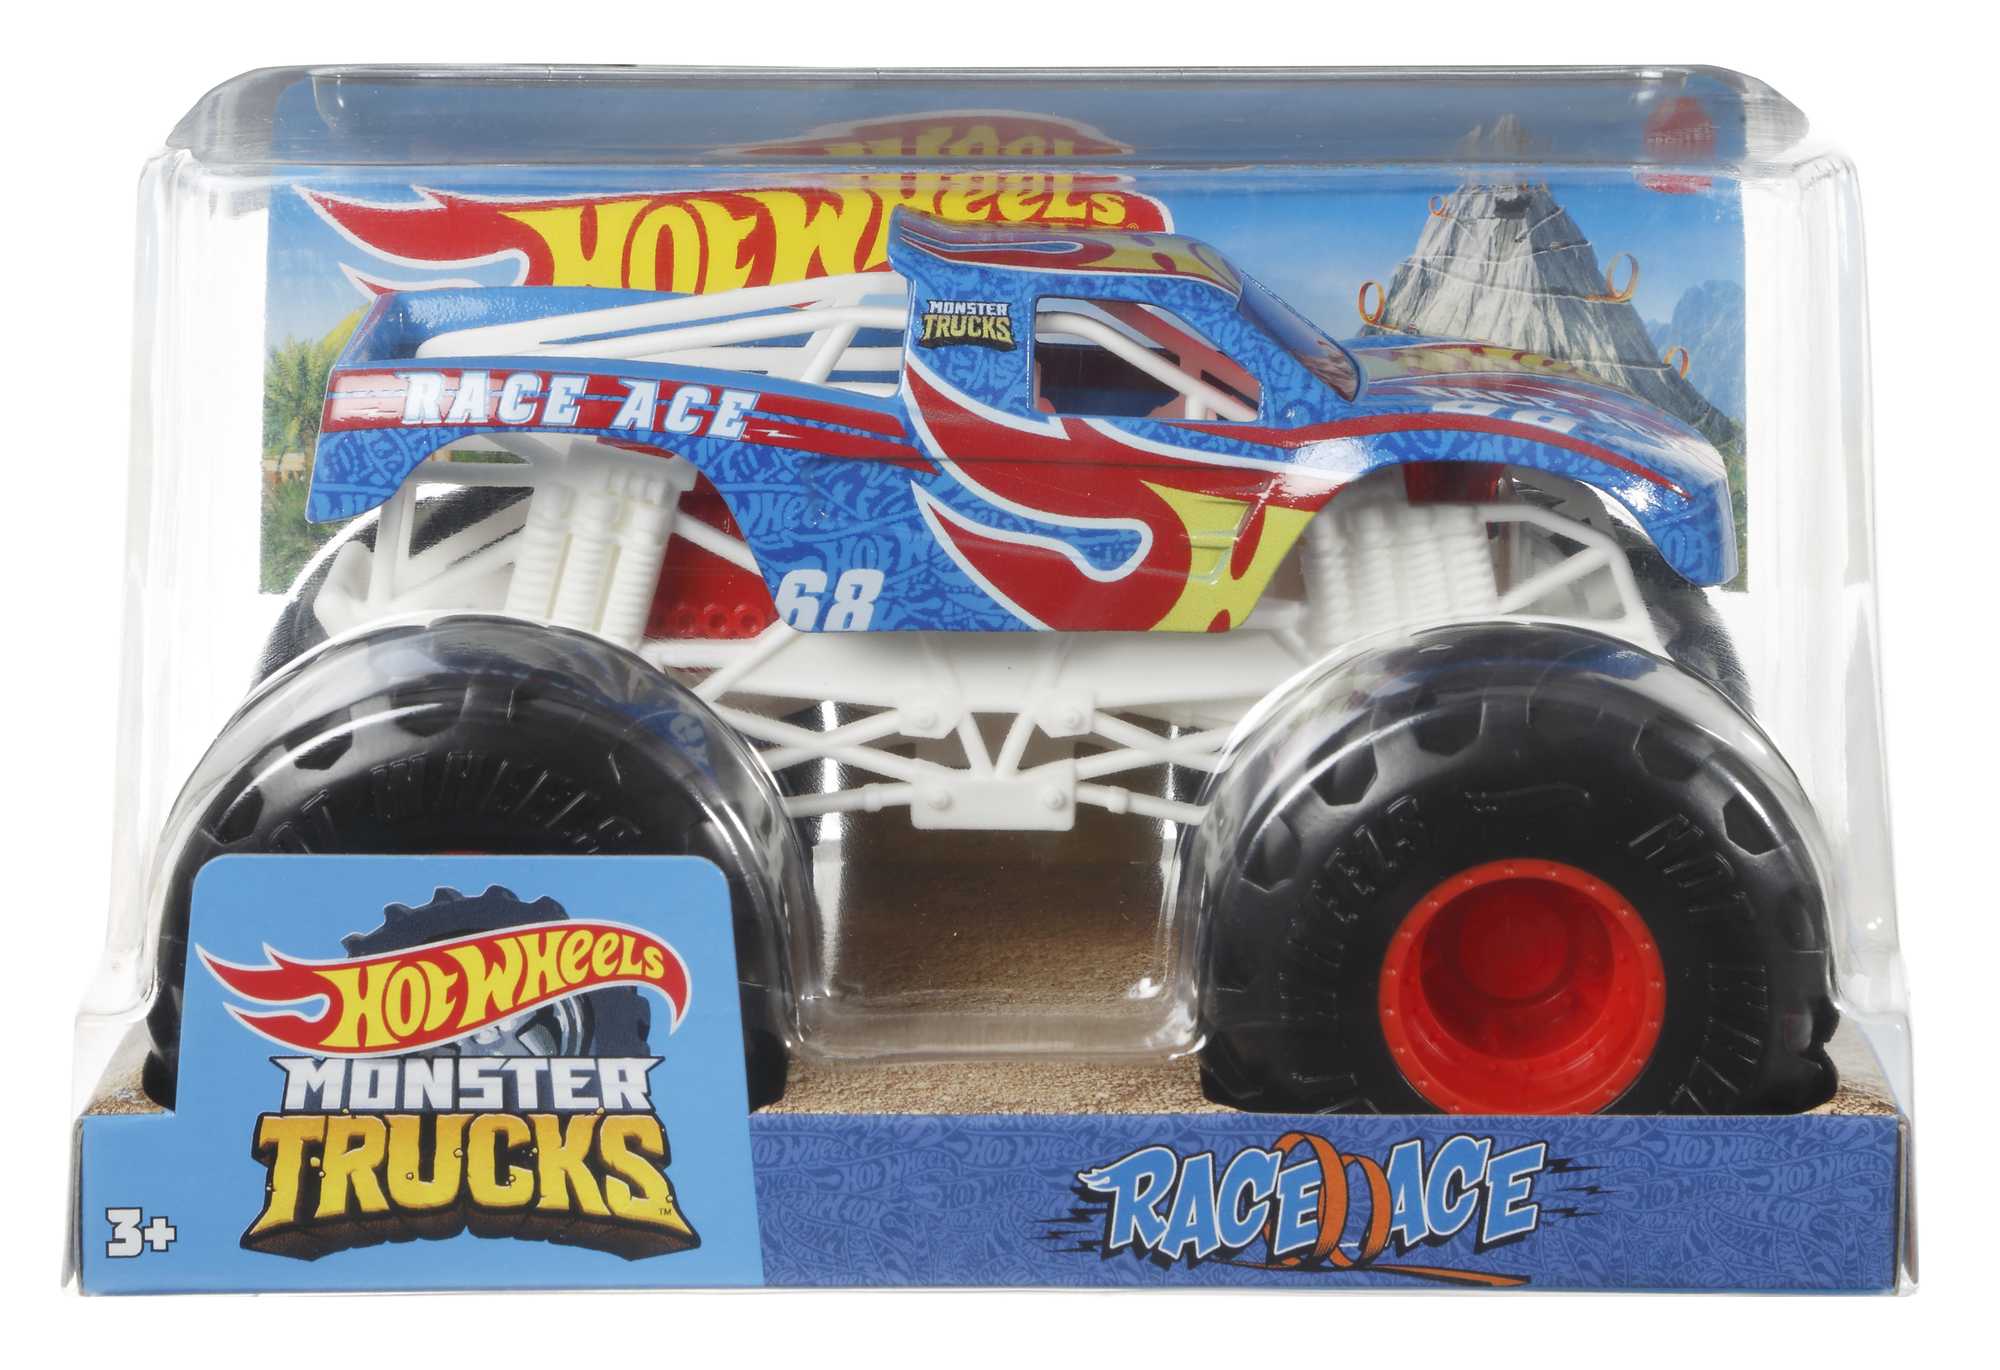 Hot wheels monster trucks 1:24 monster portions